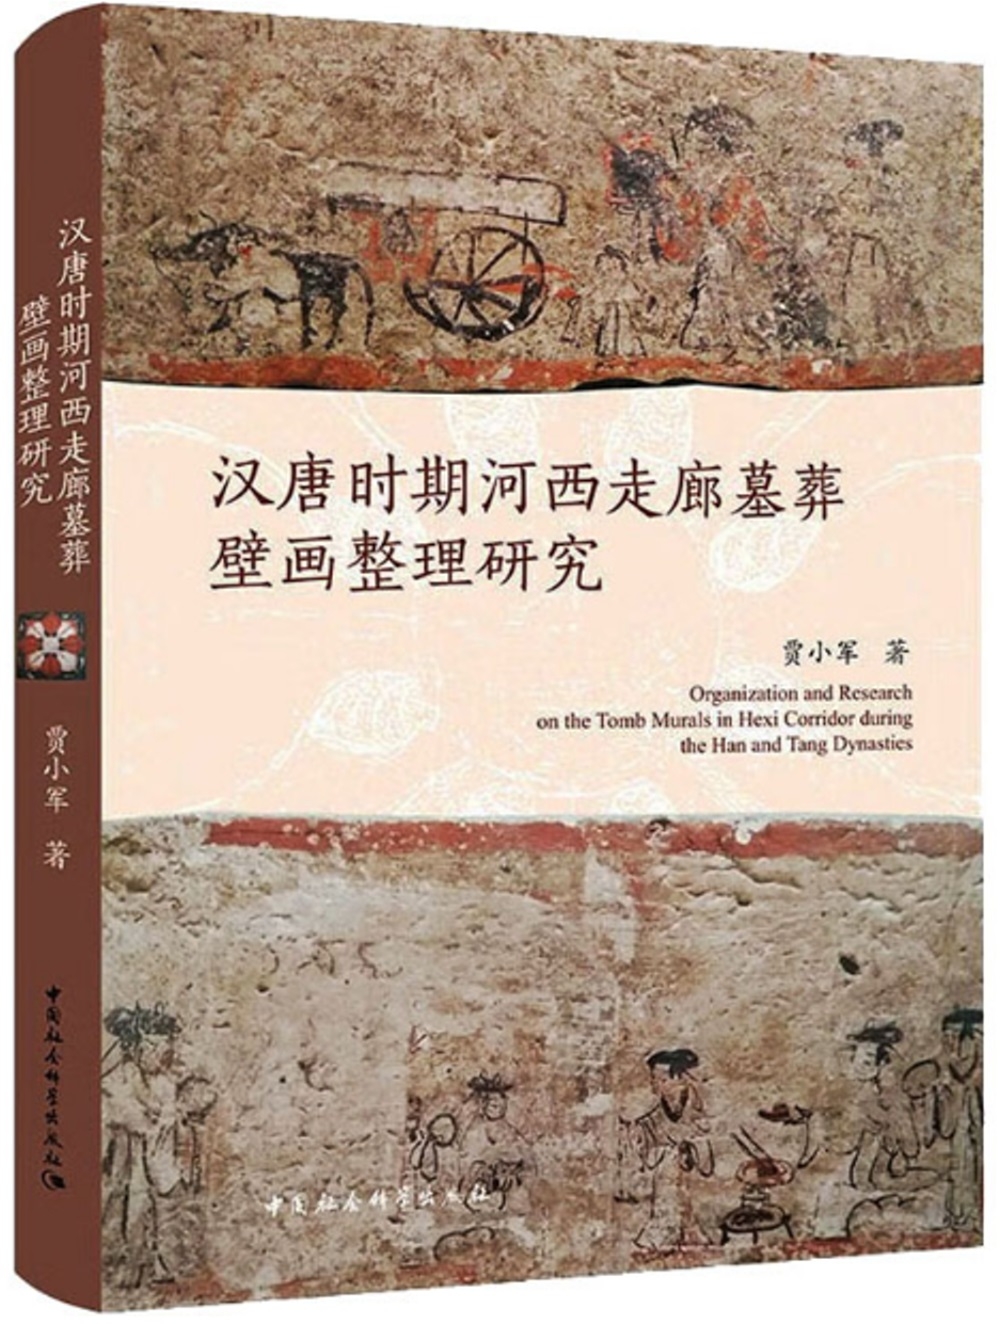 漢唐時期河西走廊墓葬壁畫整理研究